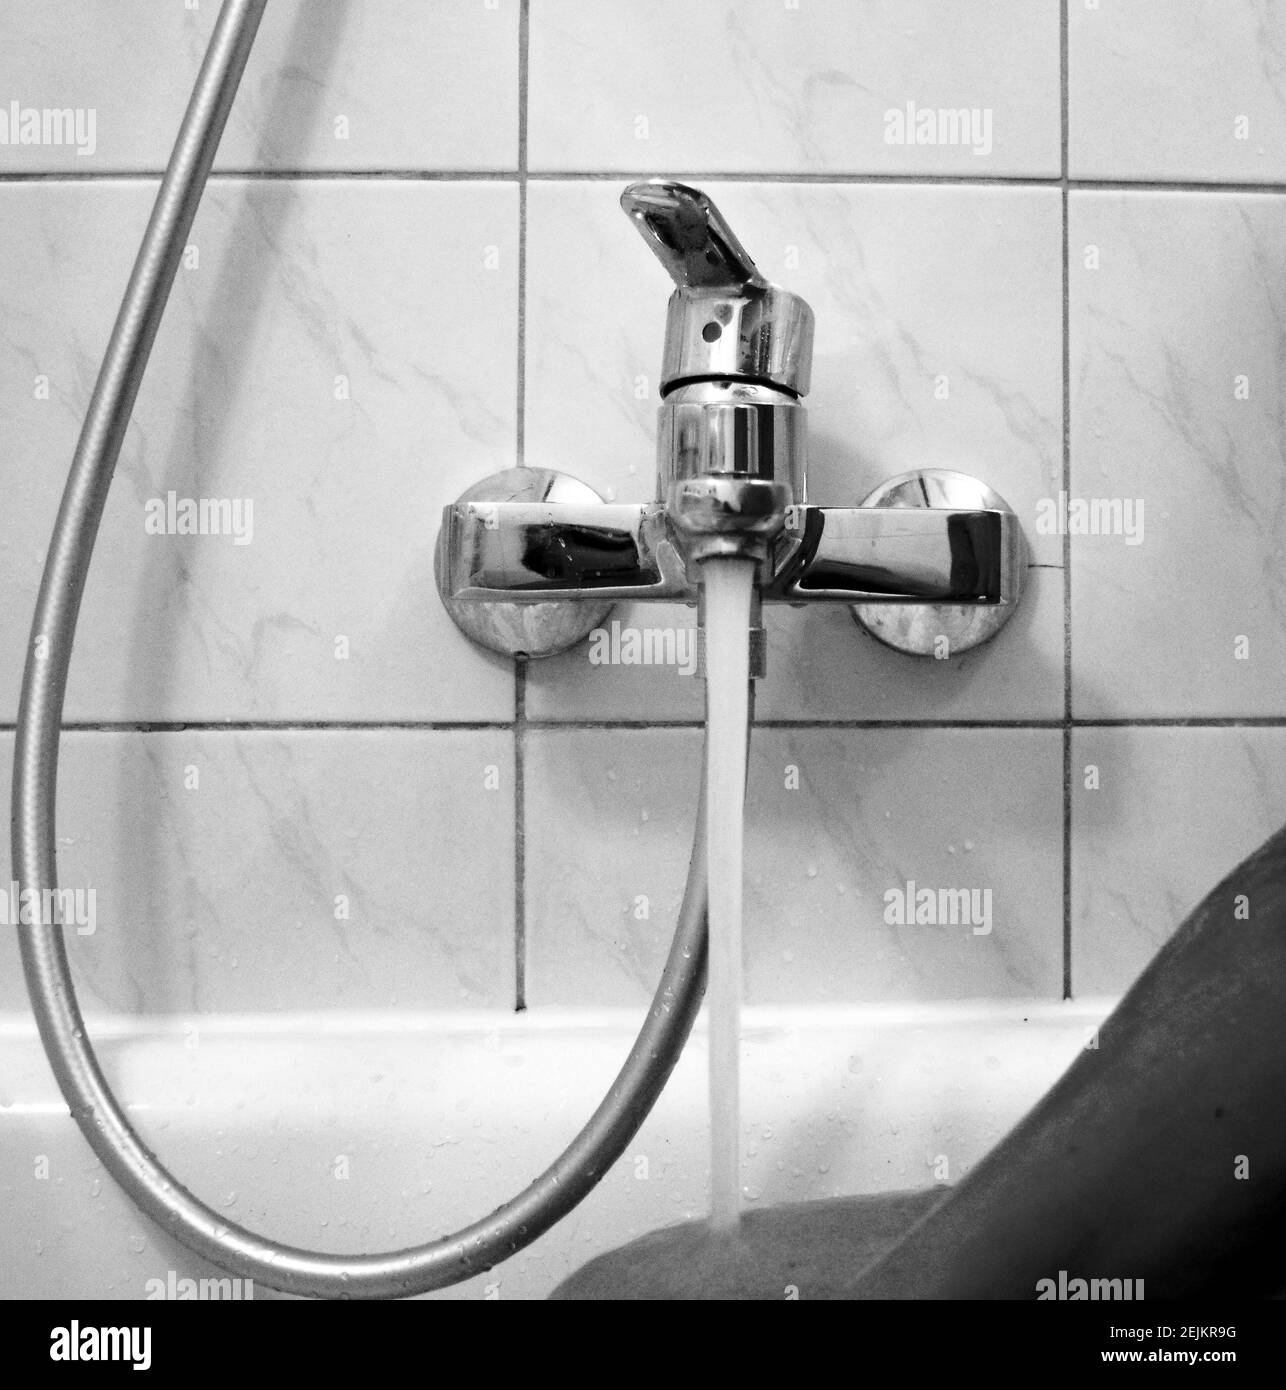 Grifo de agua, grifo de metal cromado para el baño, mezcladora de agua  caliente fría, moderno sistema de ducha y soporte para la cabeza de la ducha.  Fontanería Fotografía de stock -